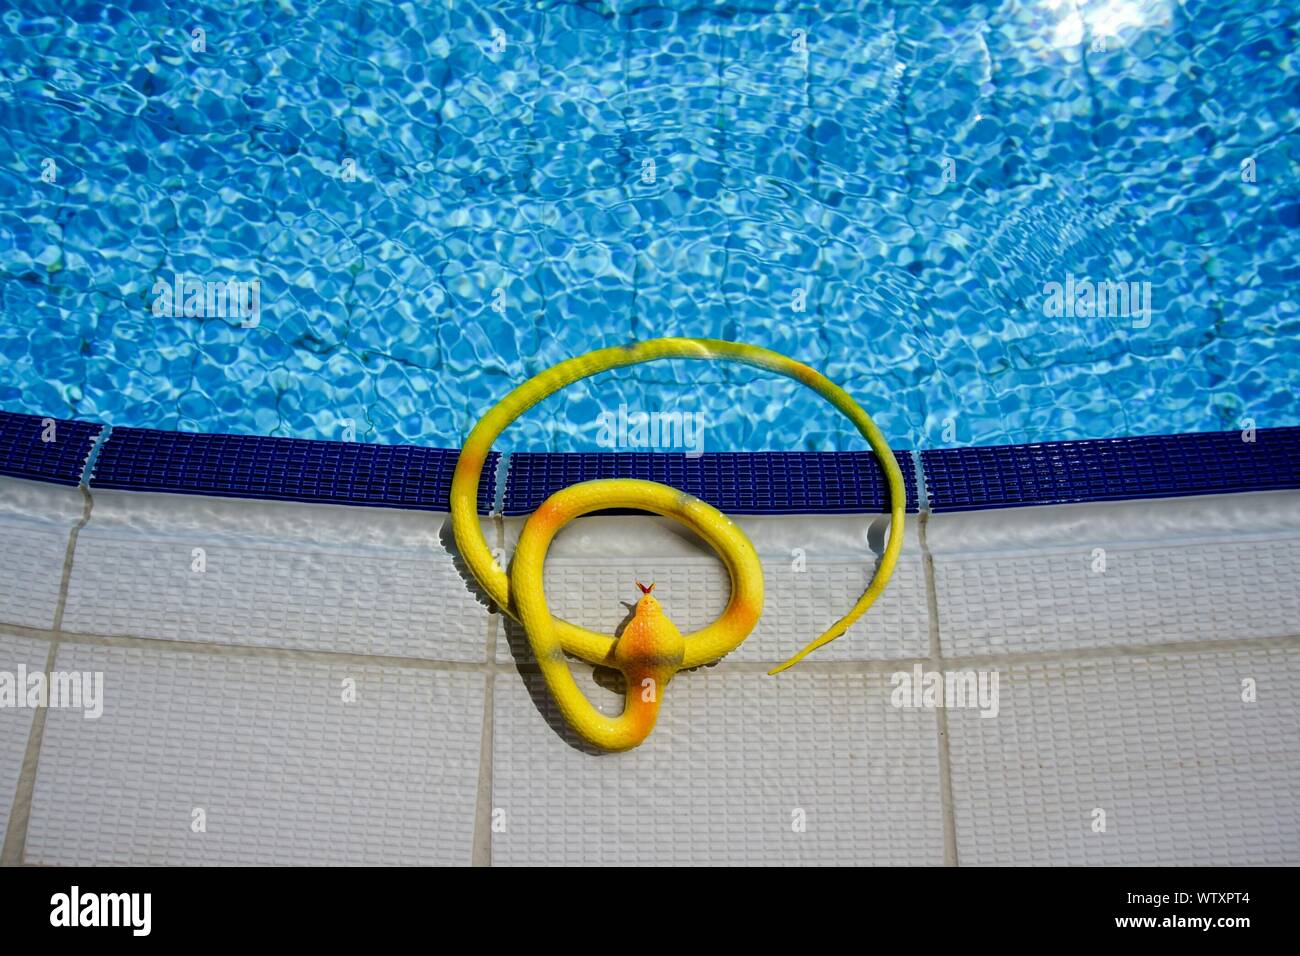 Un alto ángulo de visualización de serpiente de juguete en la piscina Foto de stock